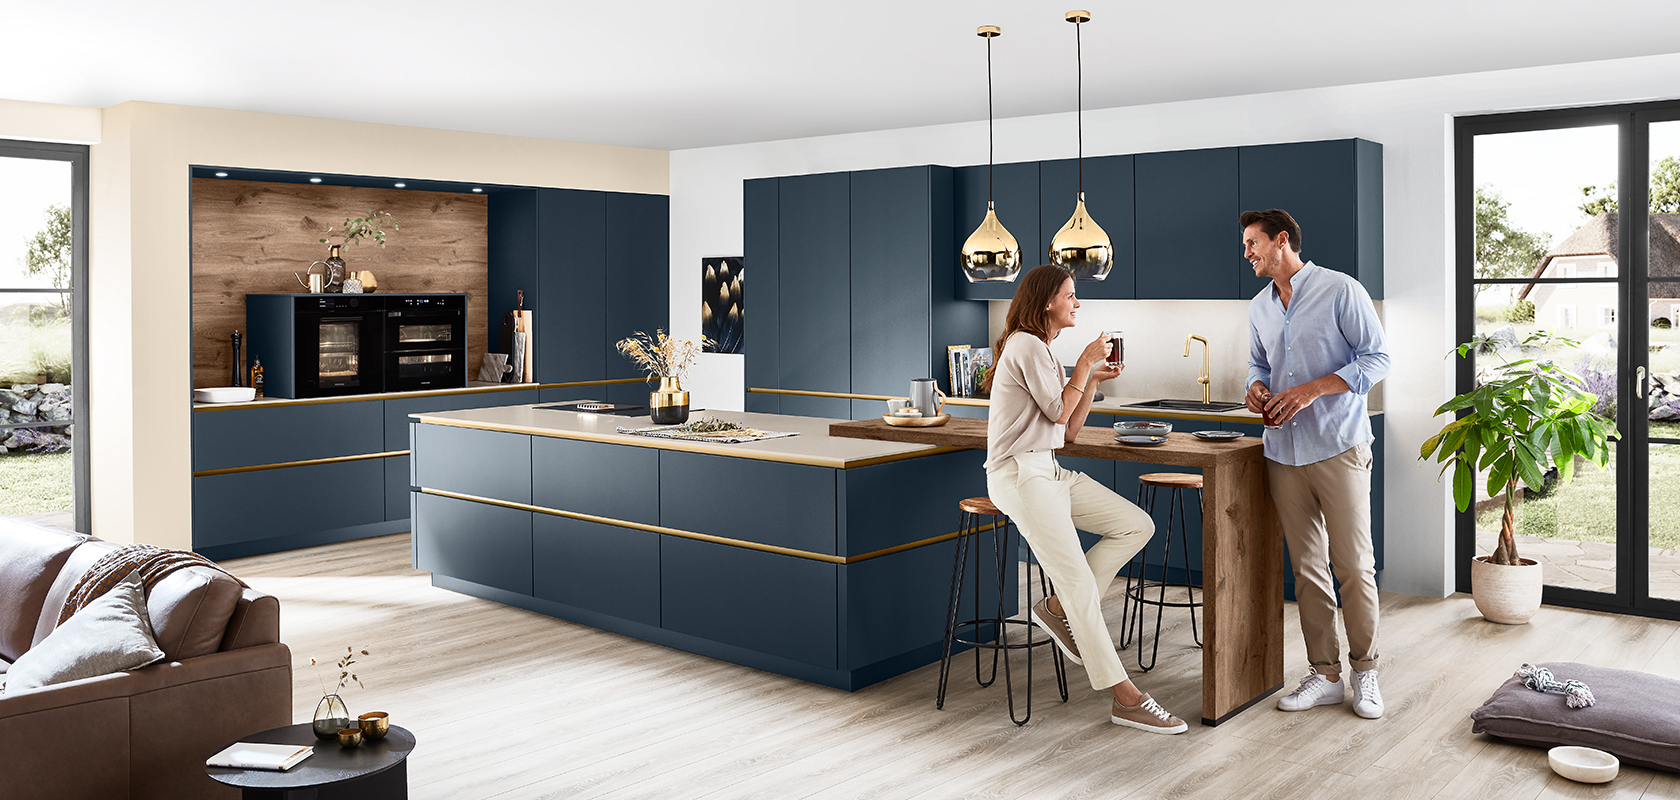 Interior de cocina moderna con una pareja disfrutando de vino alrededor de una isla elegante con gabinetes de color azul marino y elegantes detalles dorados, bajo cálidas luces colgantes.